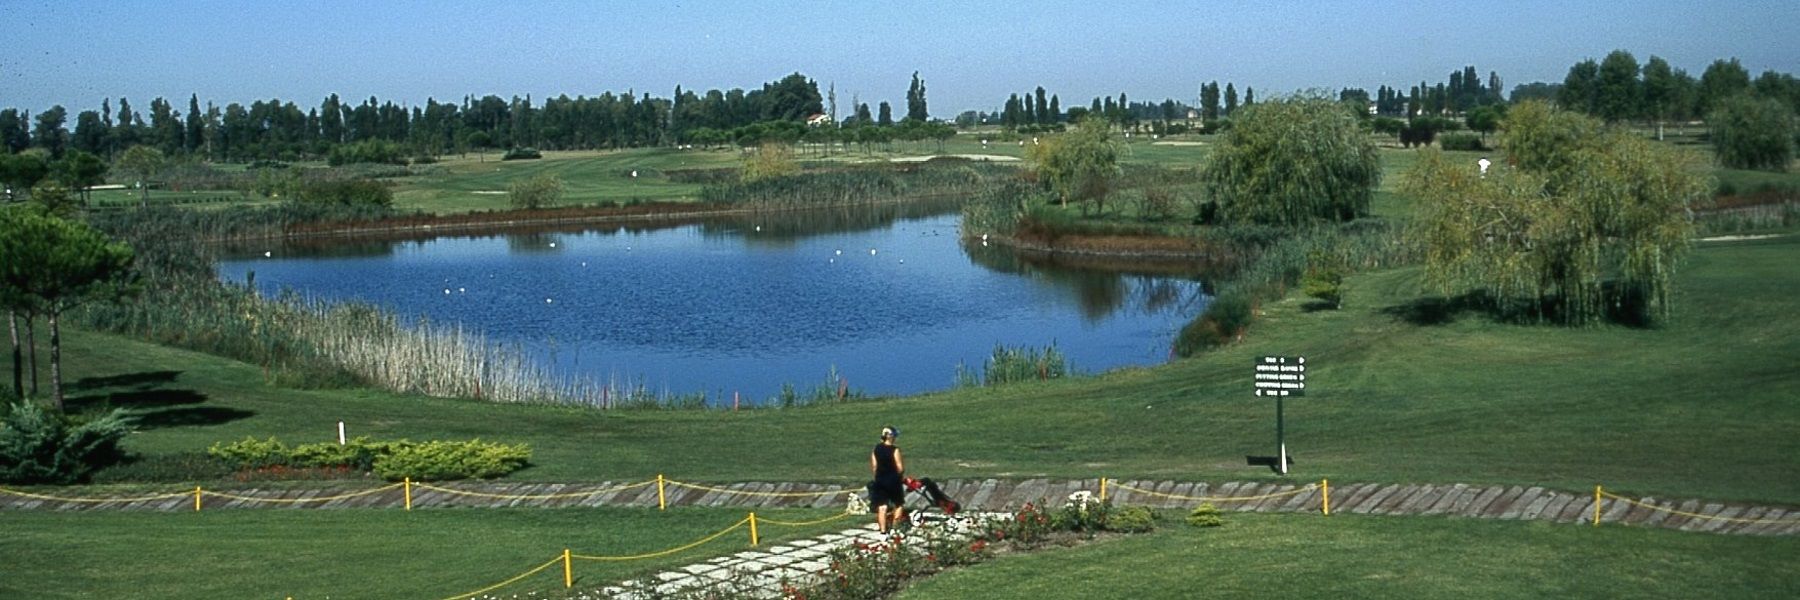 Adriatic Golf Club Cervia - Rendez-vous en juin